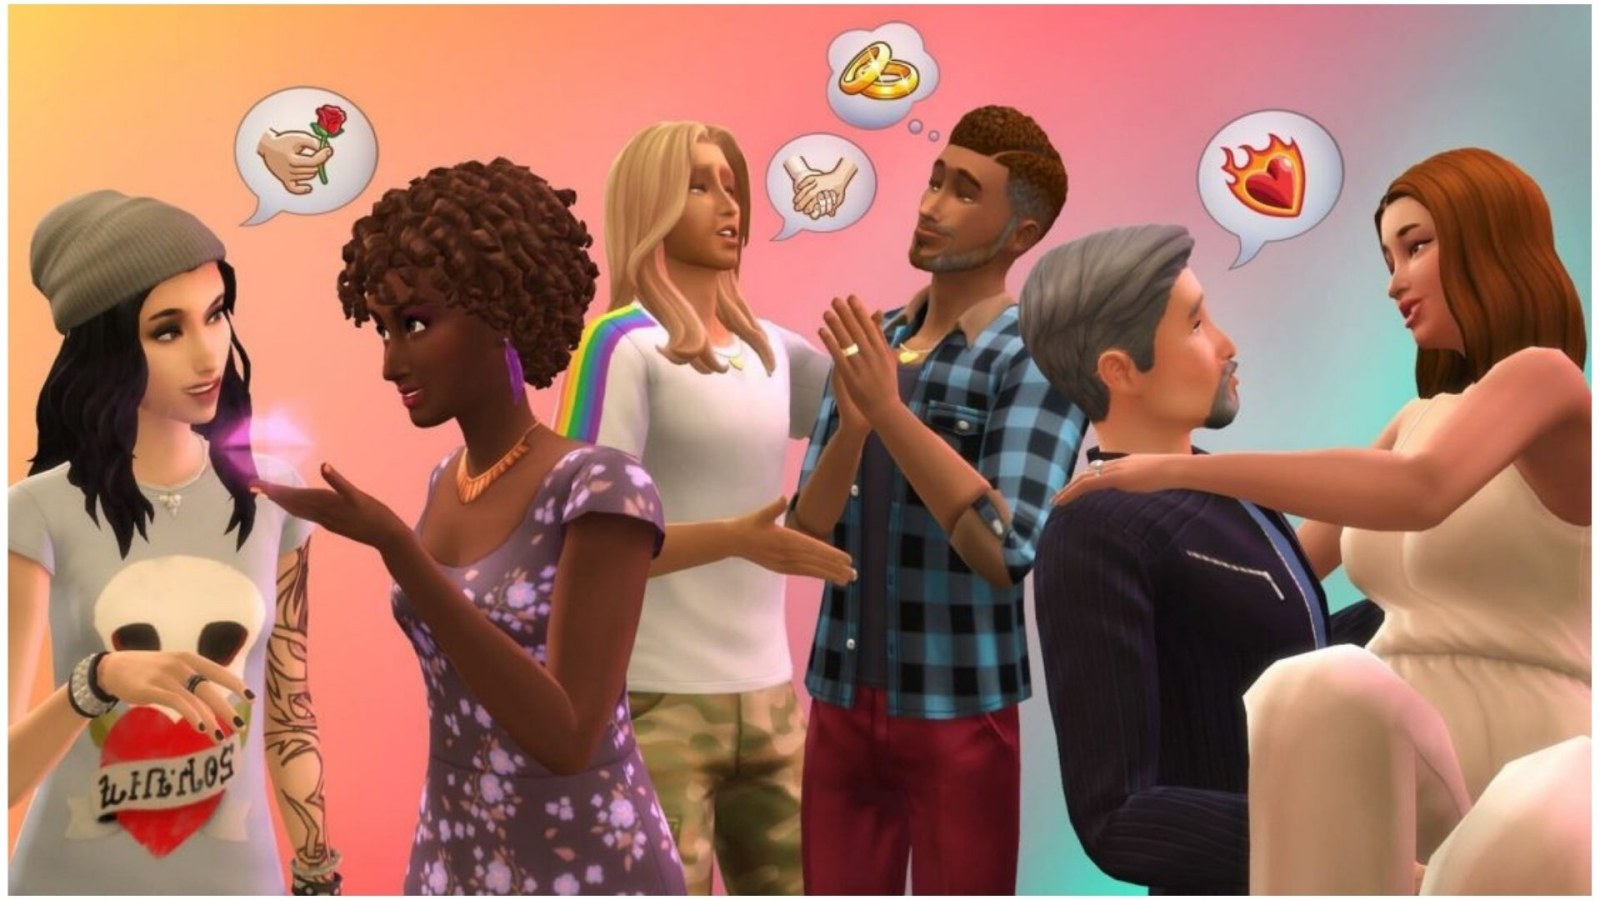 The Sims 4-Cheats de necessidade! (participação nova) 